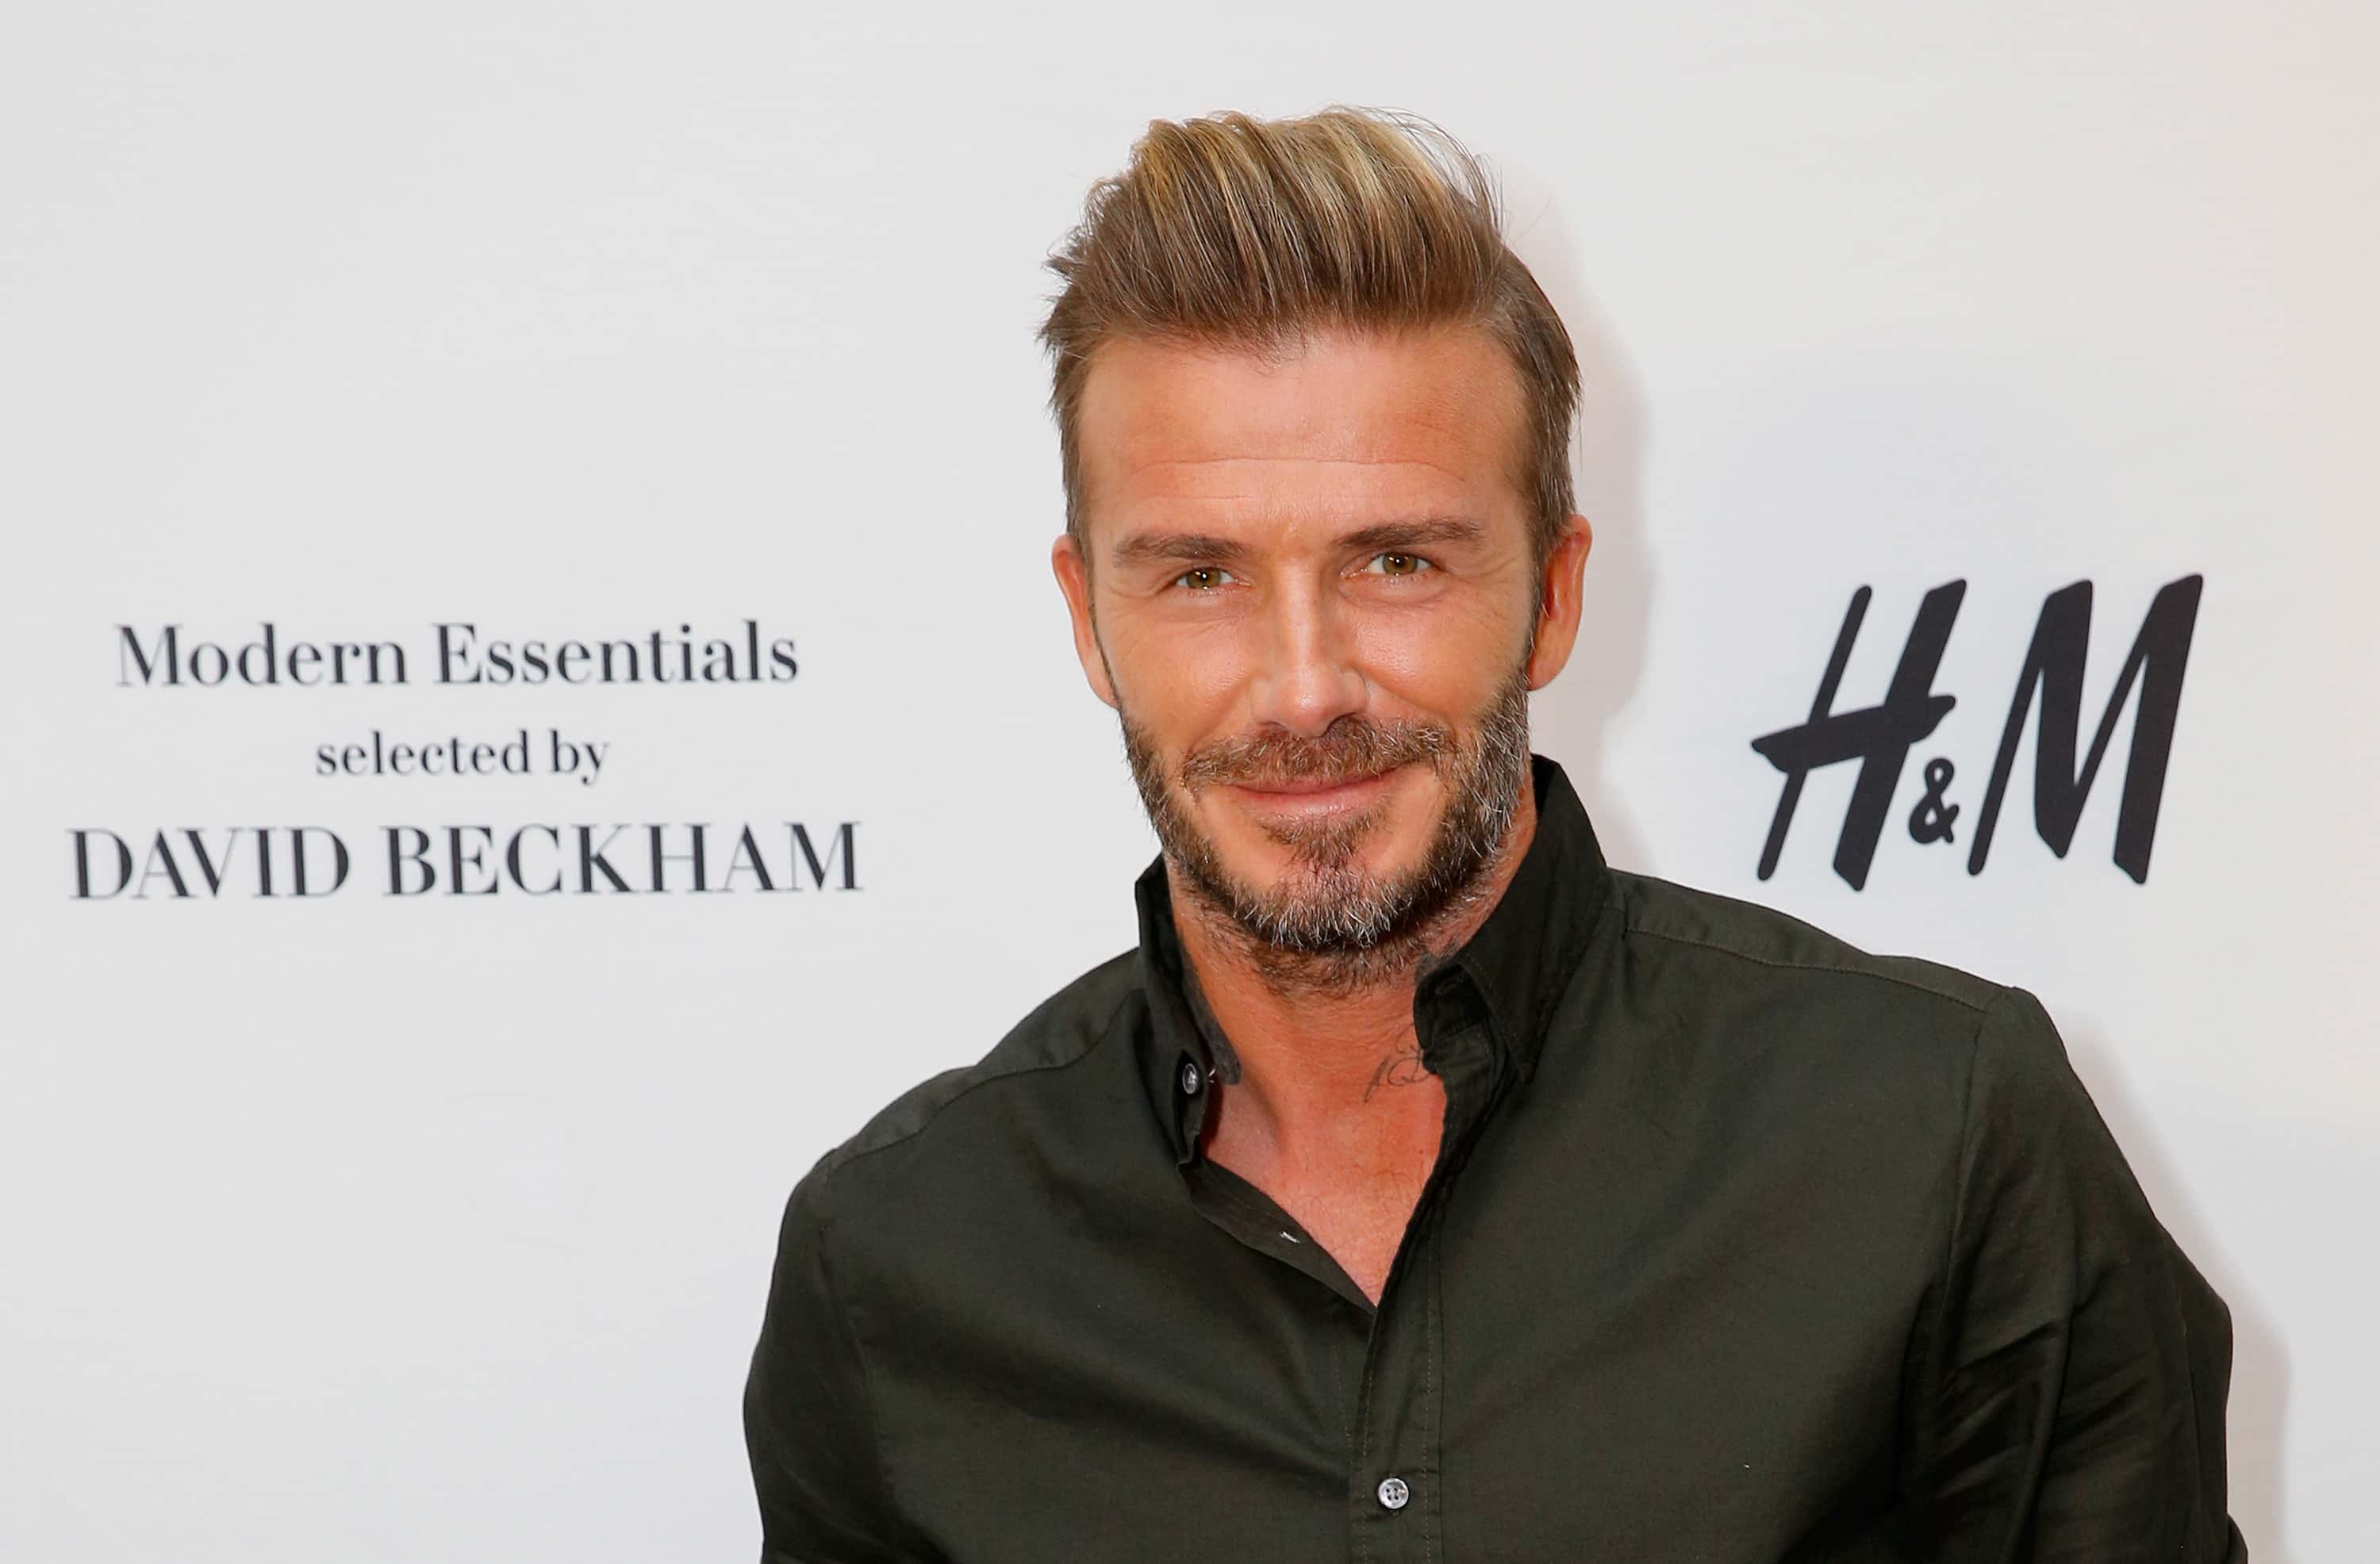 David Beckham Facts